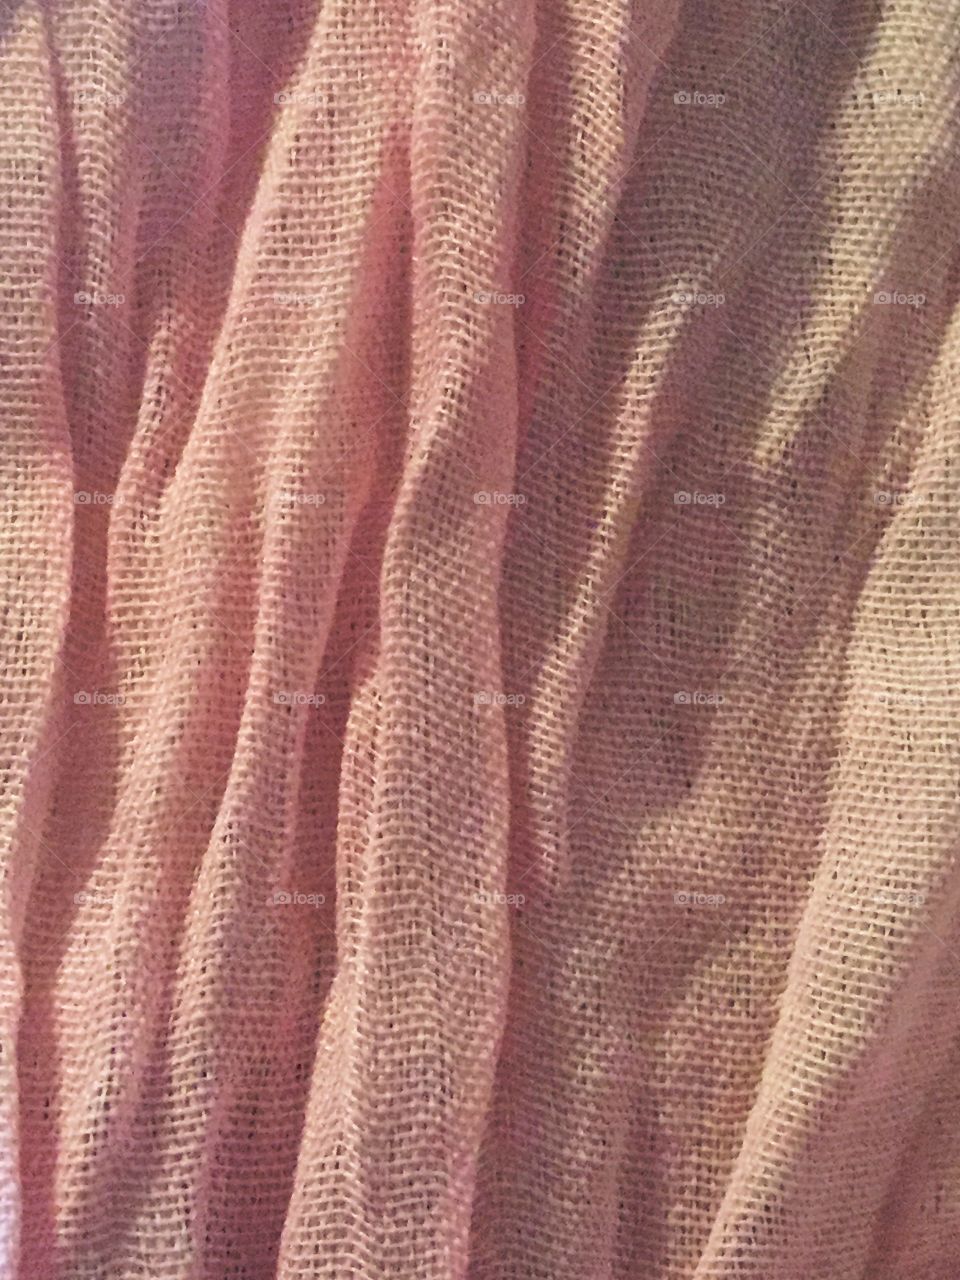 Macro pink linen